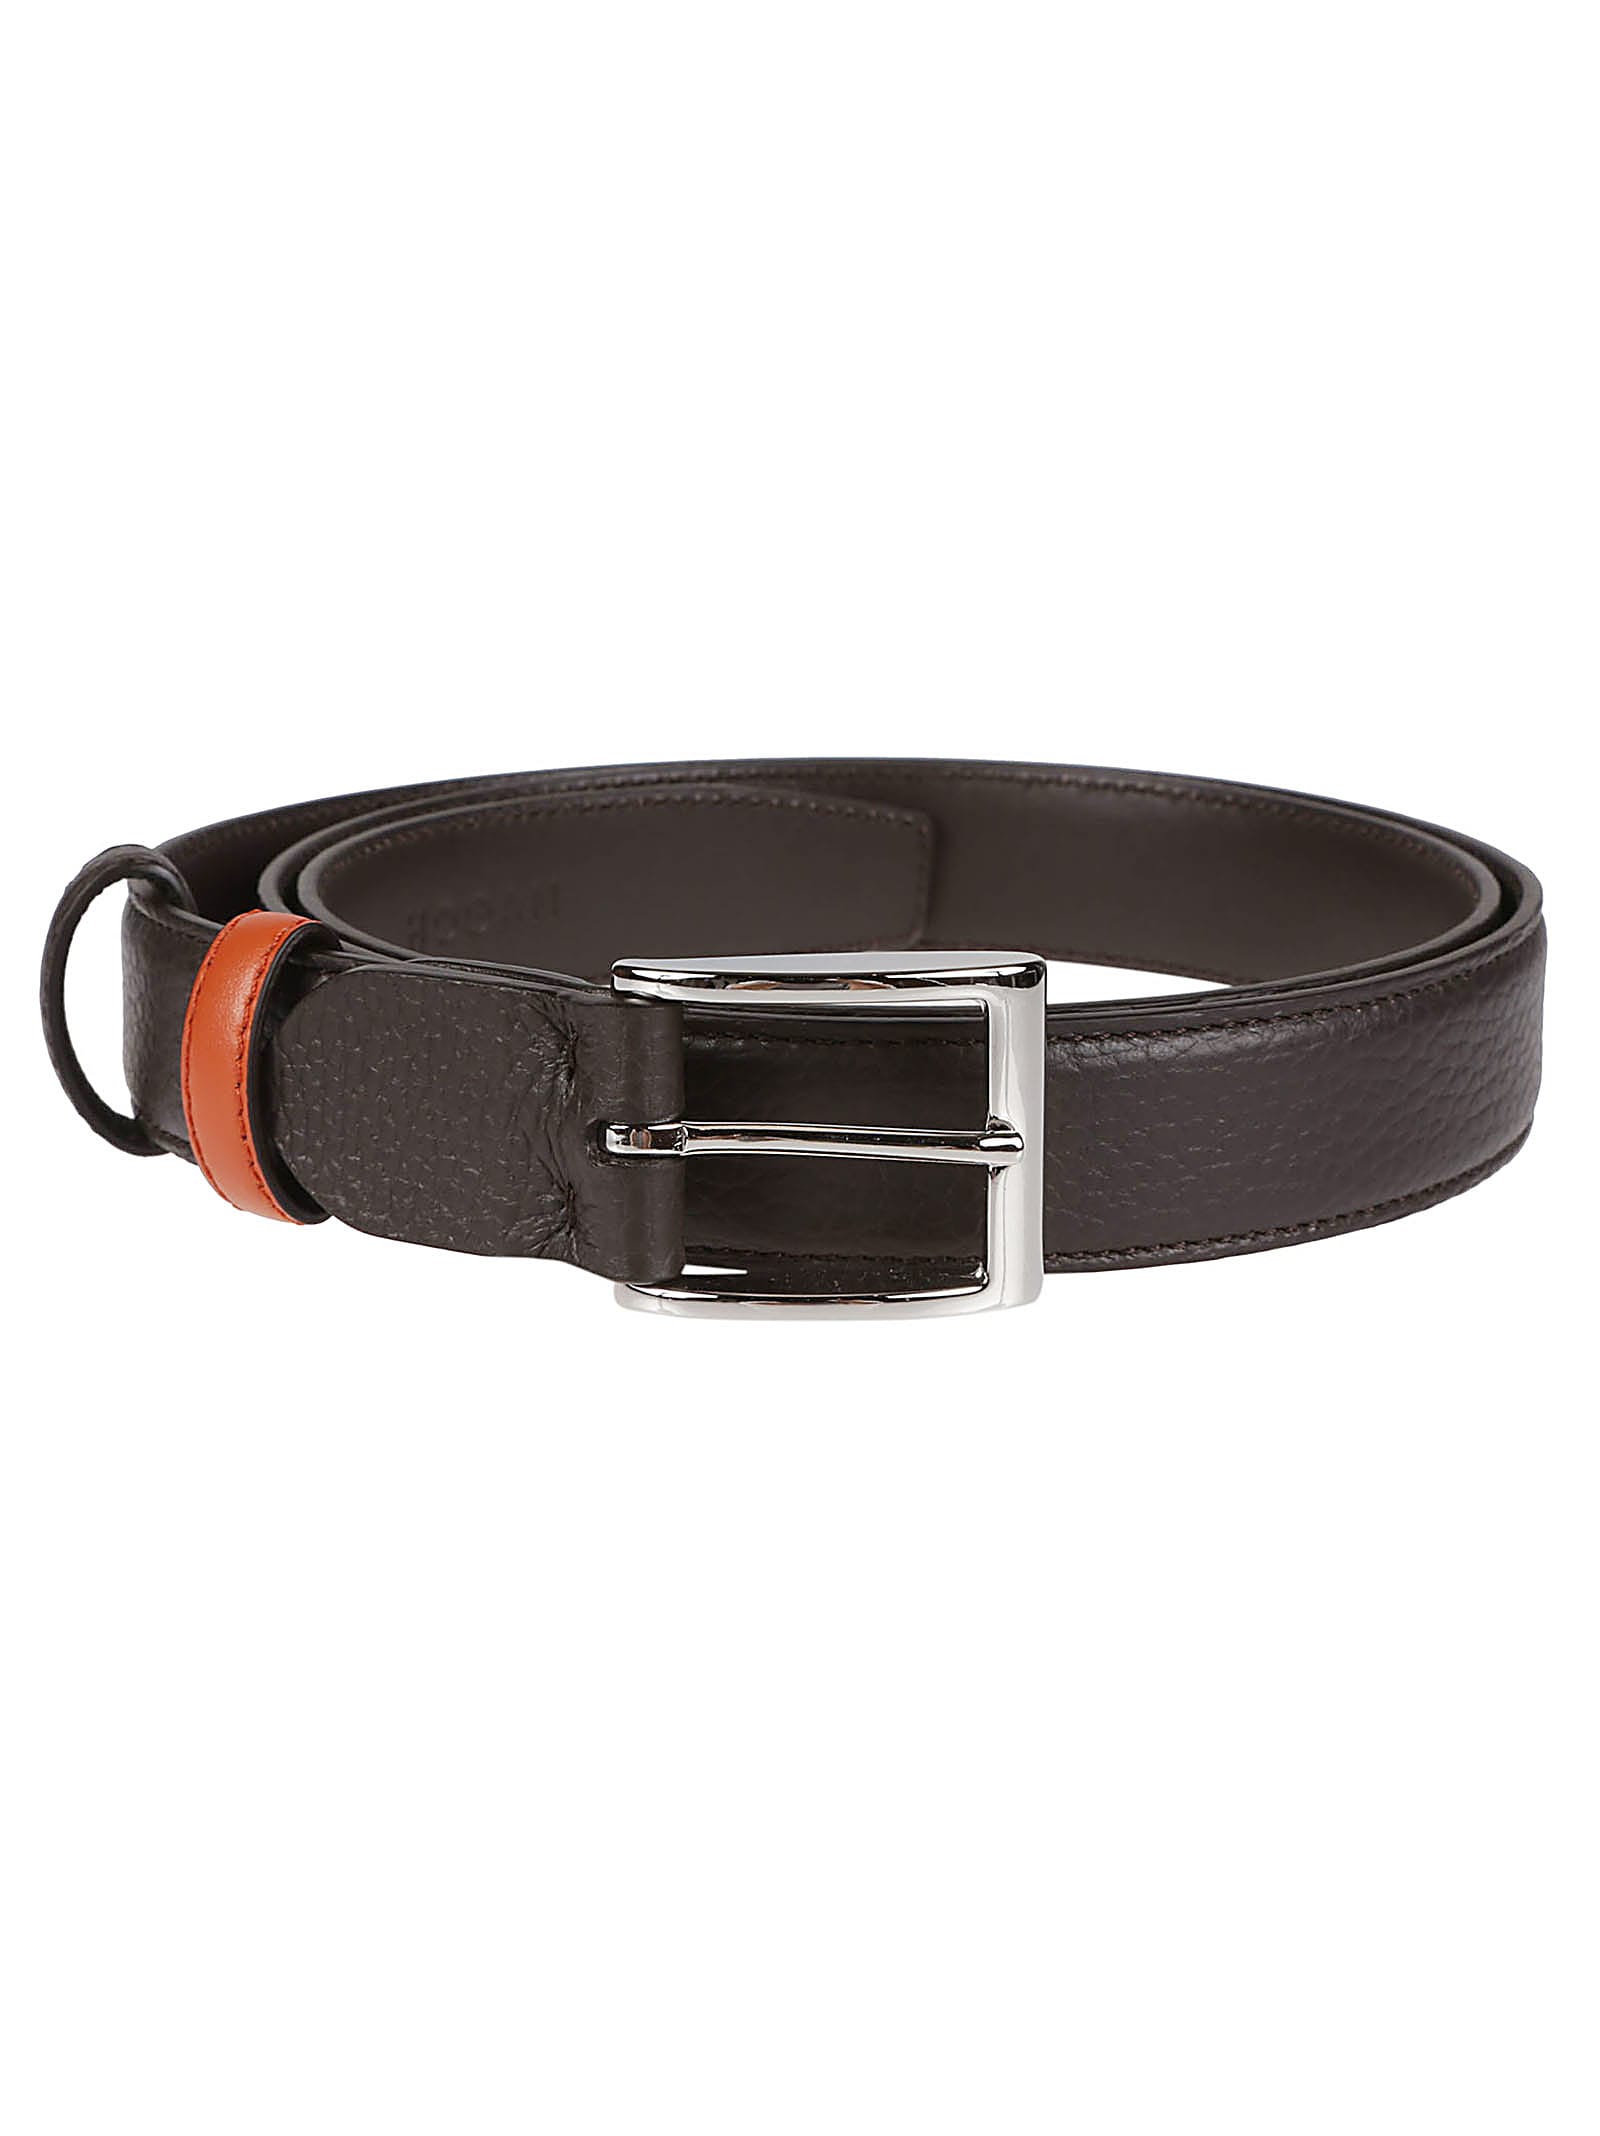 Shop Hogan Adjustable Double Belt In Testa Moro/cacao/arancio